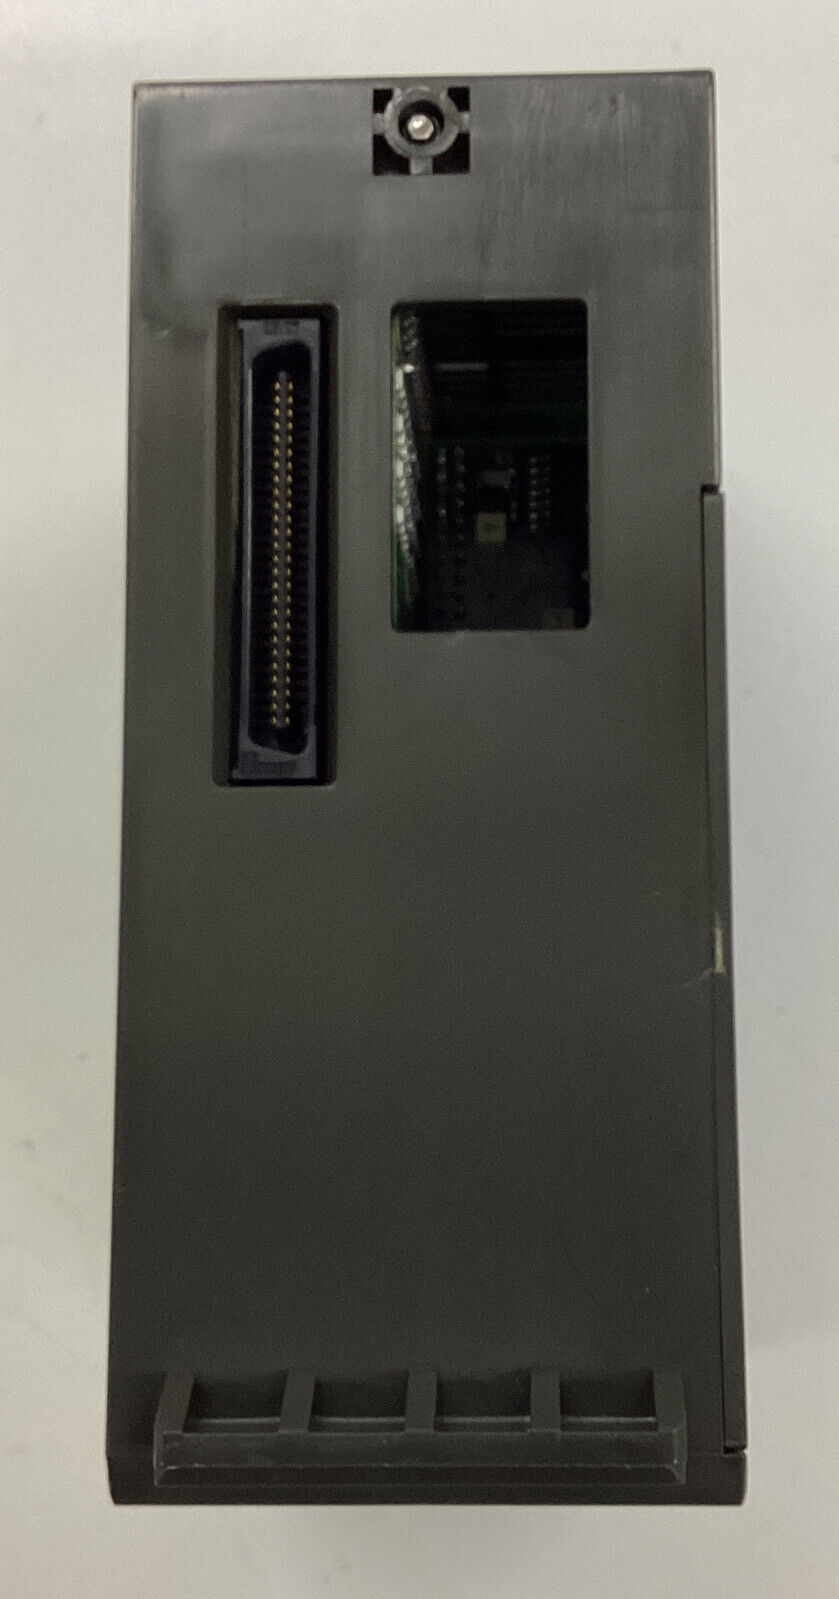 Mitsubishi A2ASCPU-S1 CPU PLC, 14k Step Processor w/ Key (CL291)